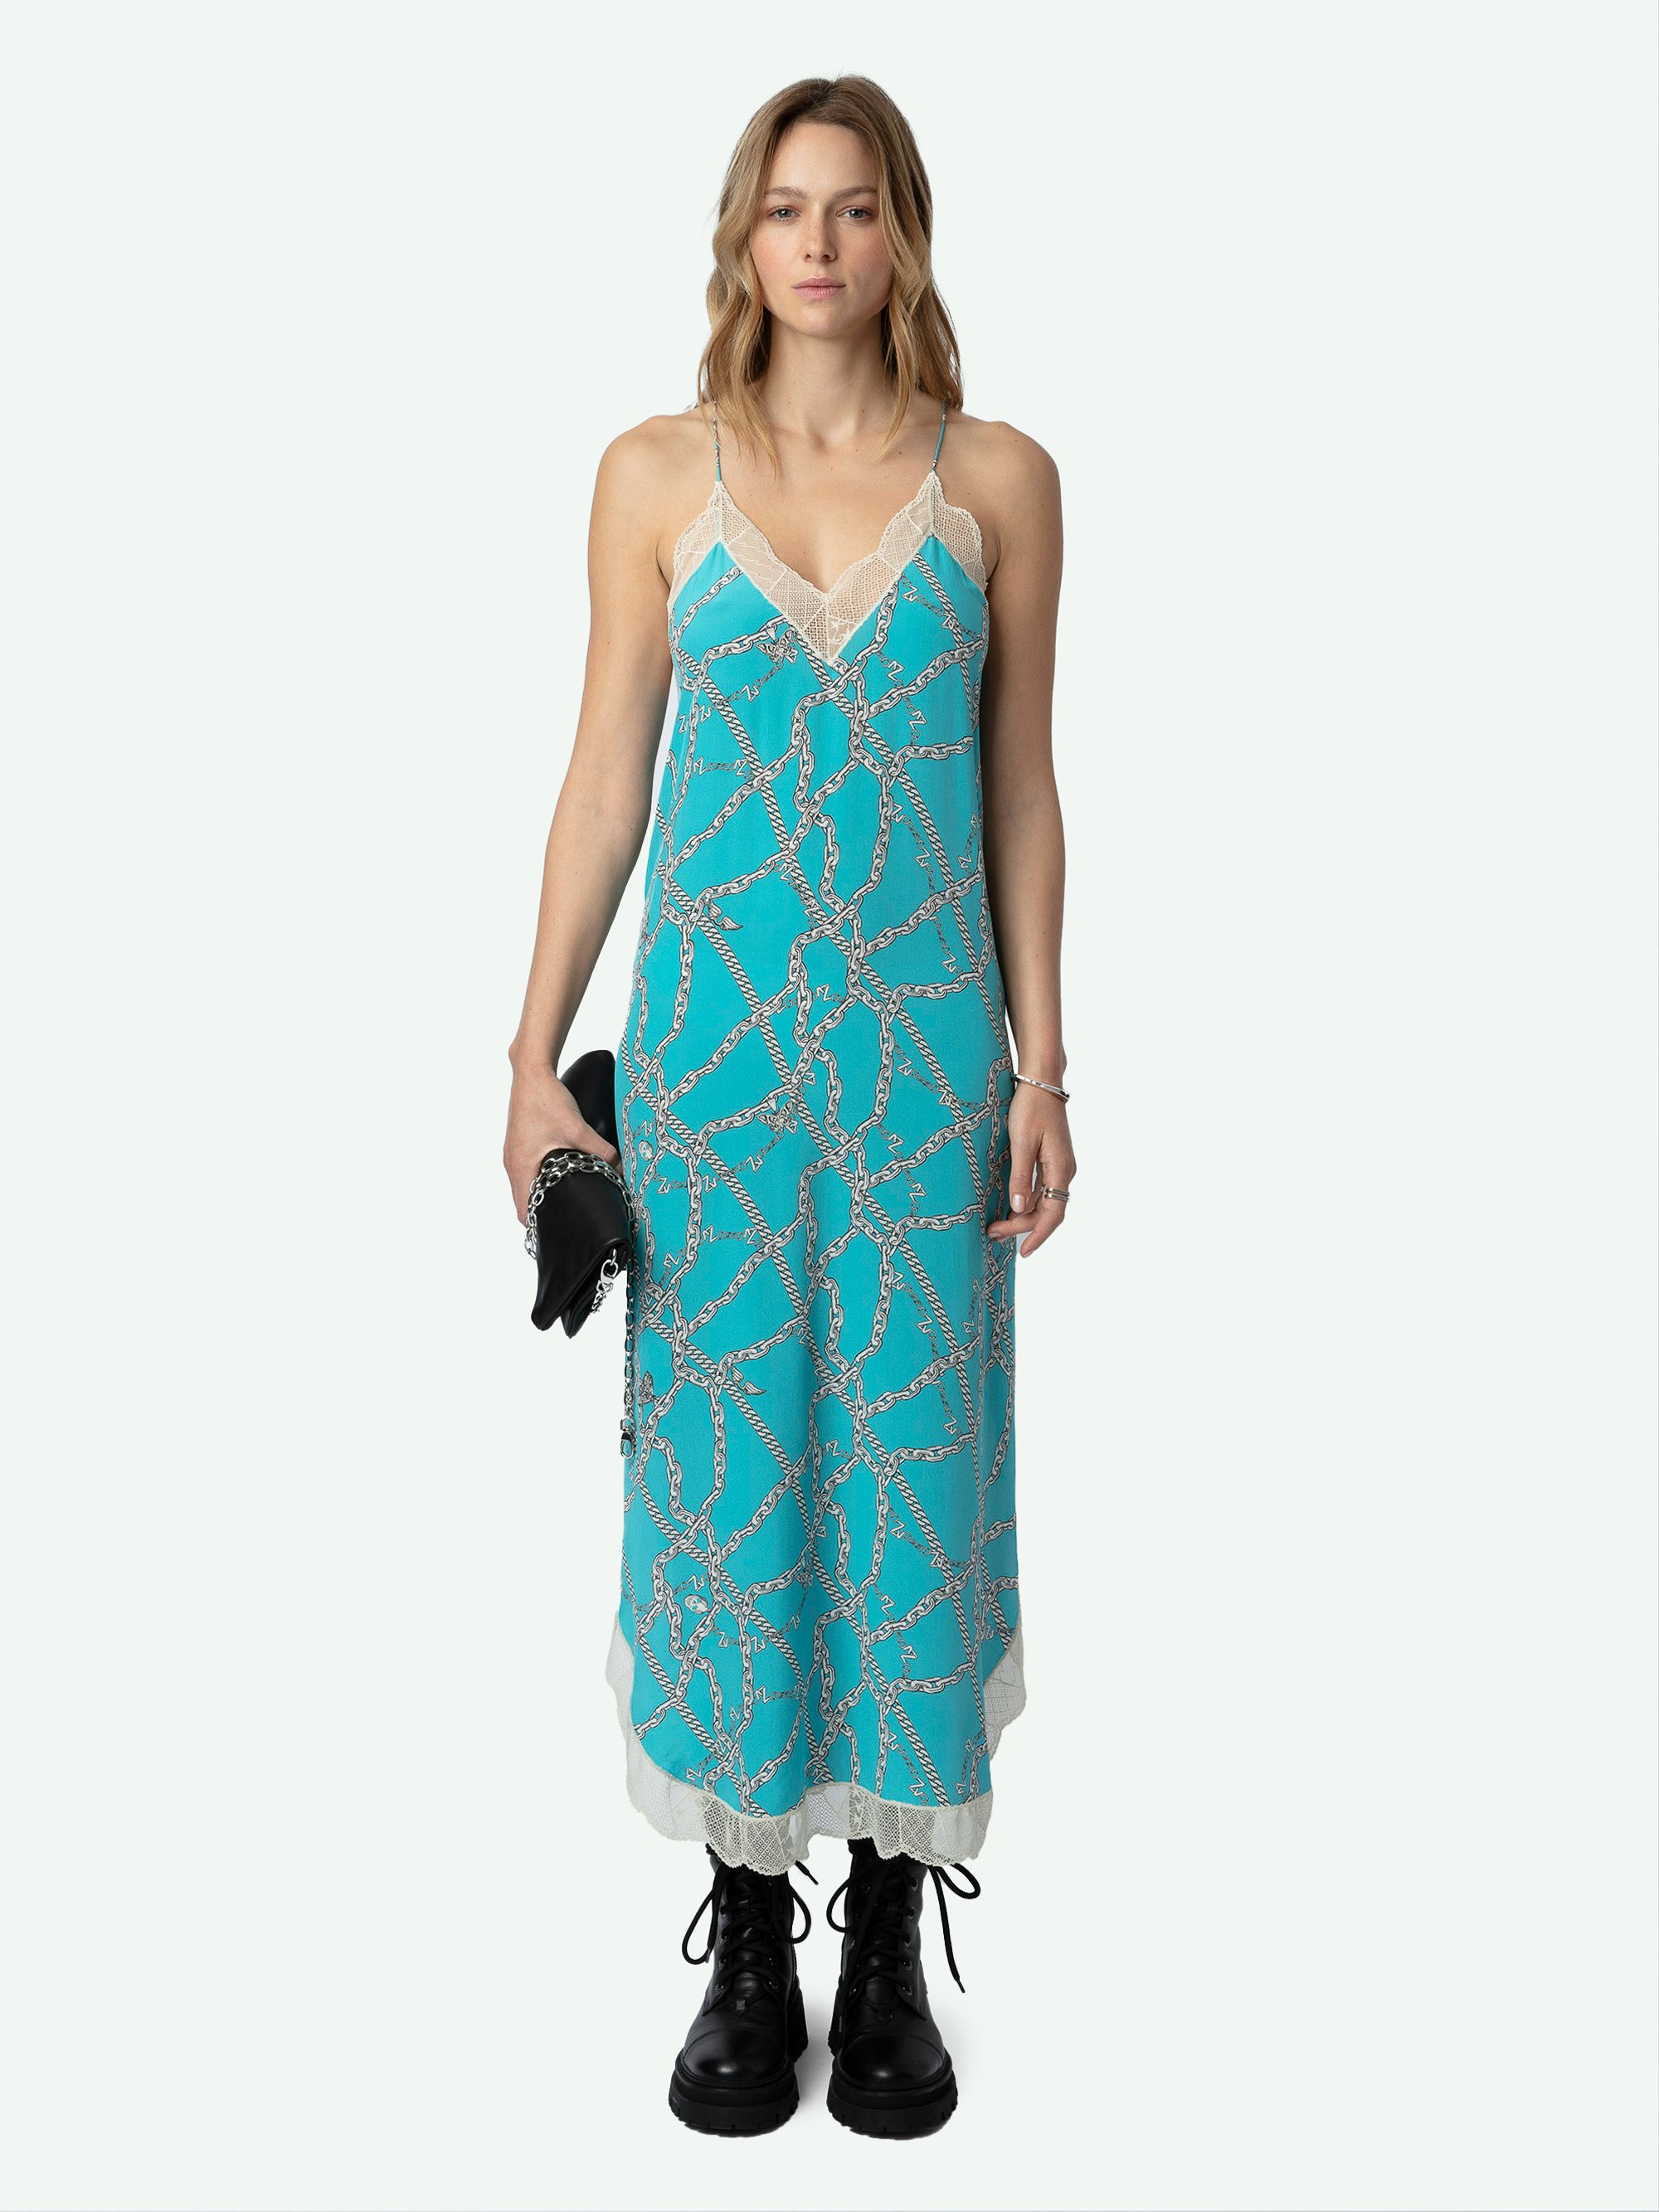 Robe Ristyl Soie - Robe longue esprit lingerie en soie bleue à motifs chaînes ZV, bretelles et bords en dentelle.